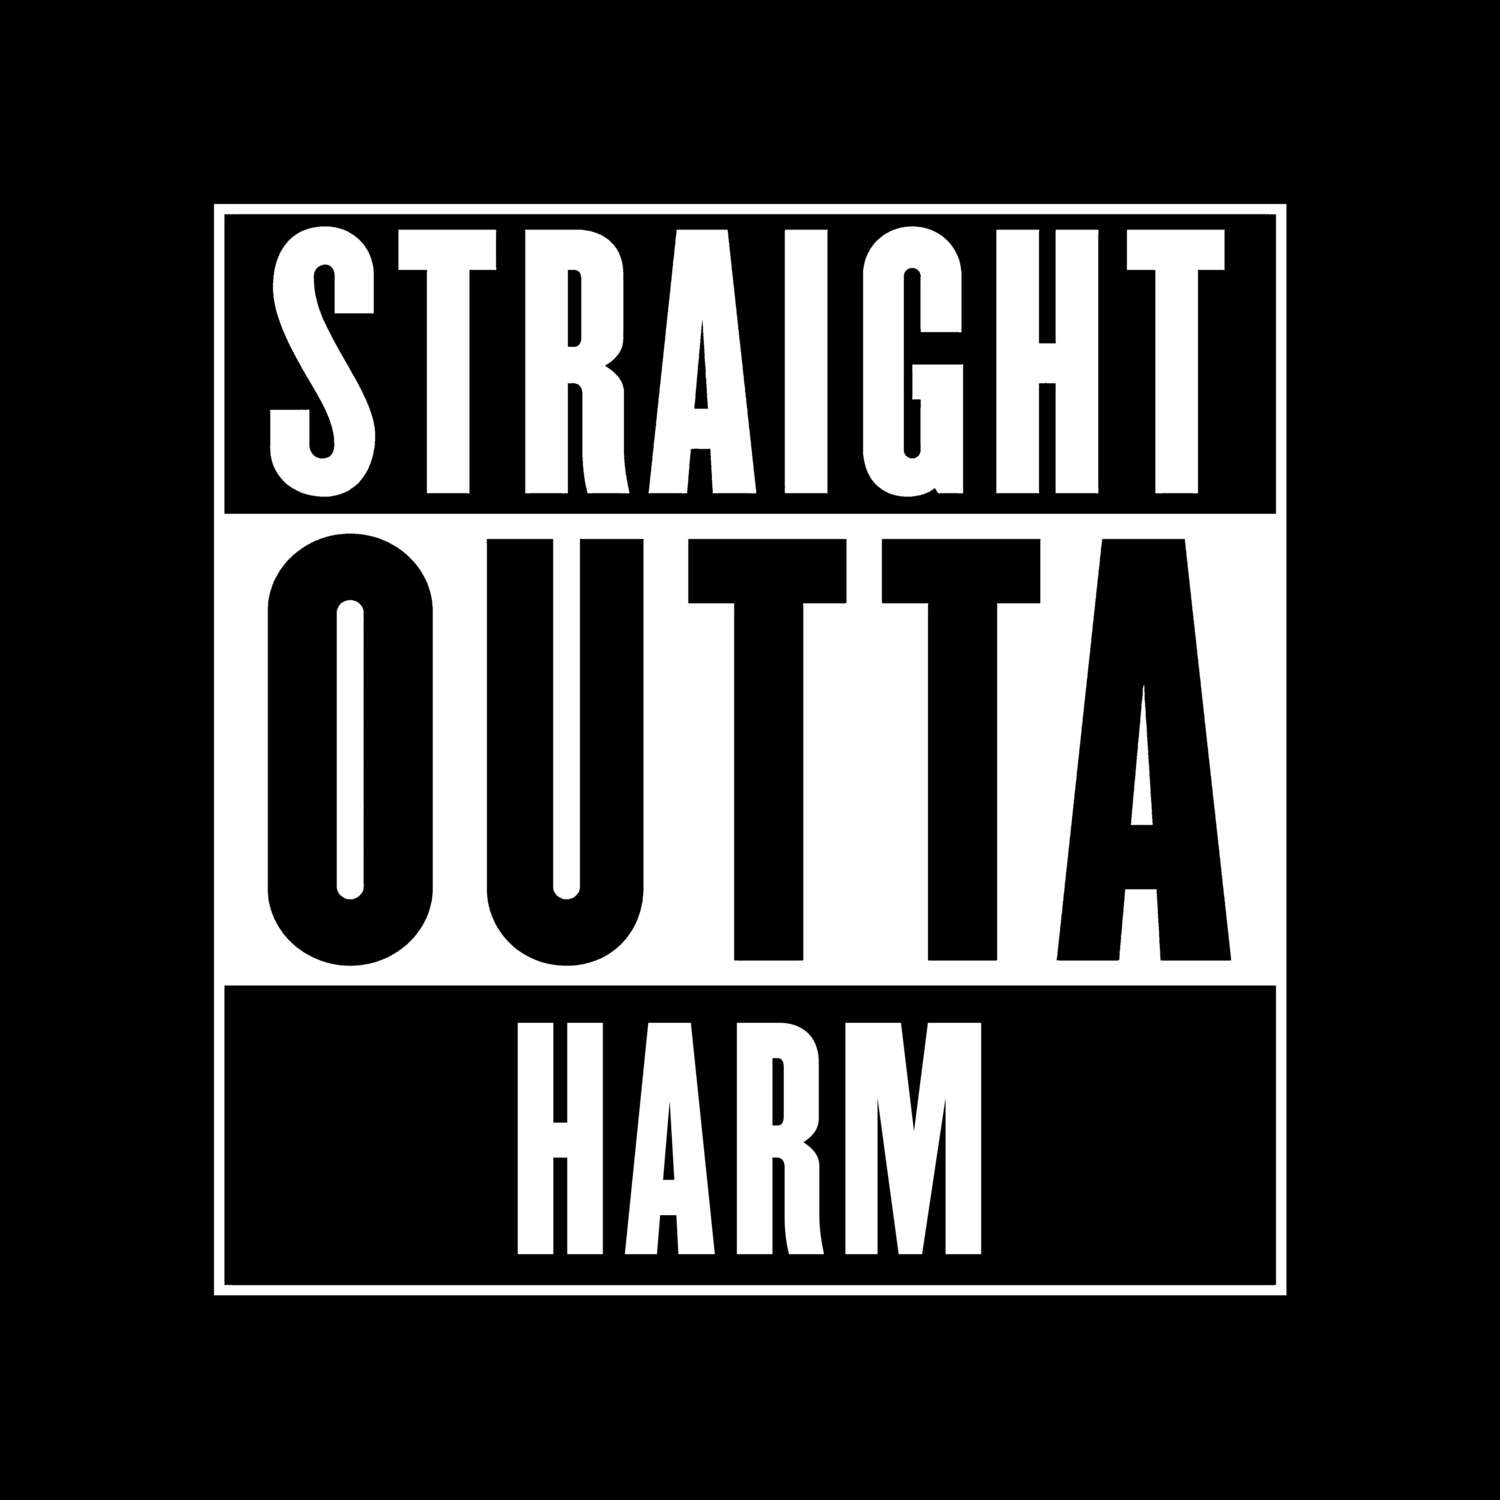 Harm T-Shirt »Straight Outta«